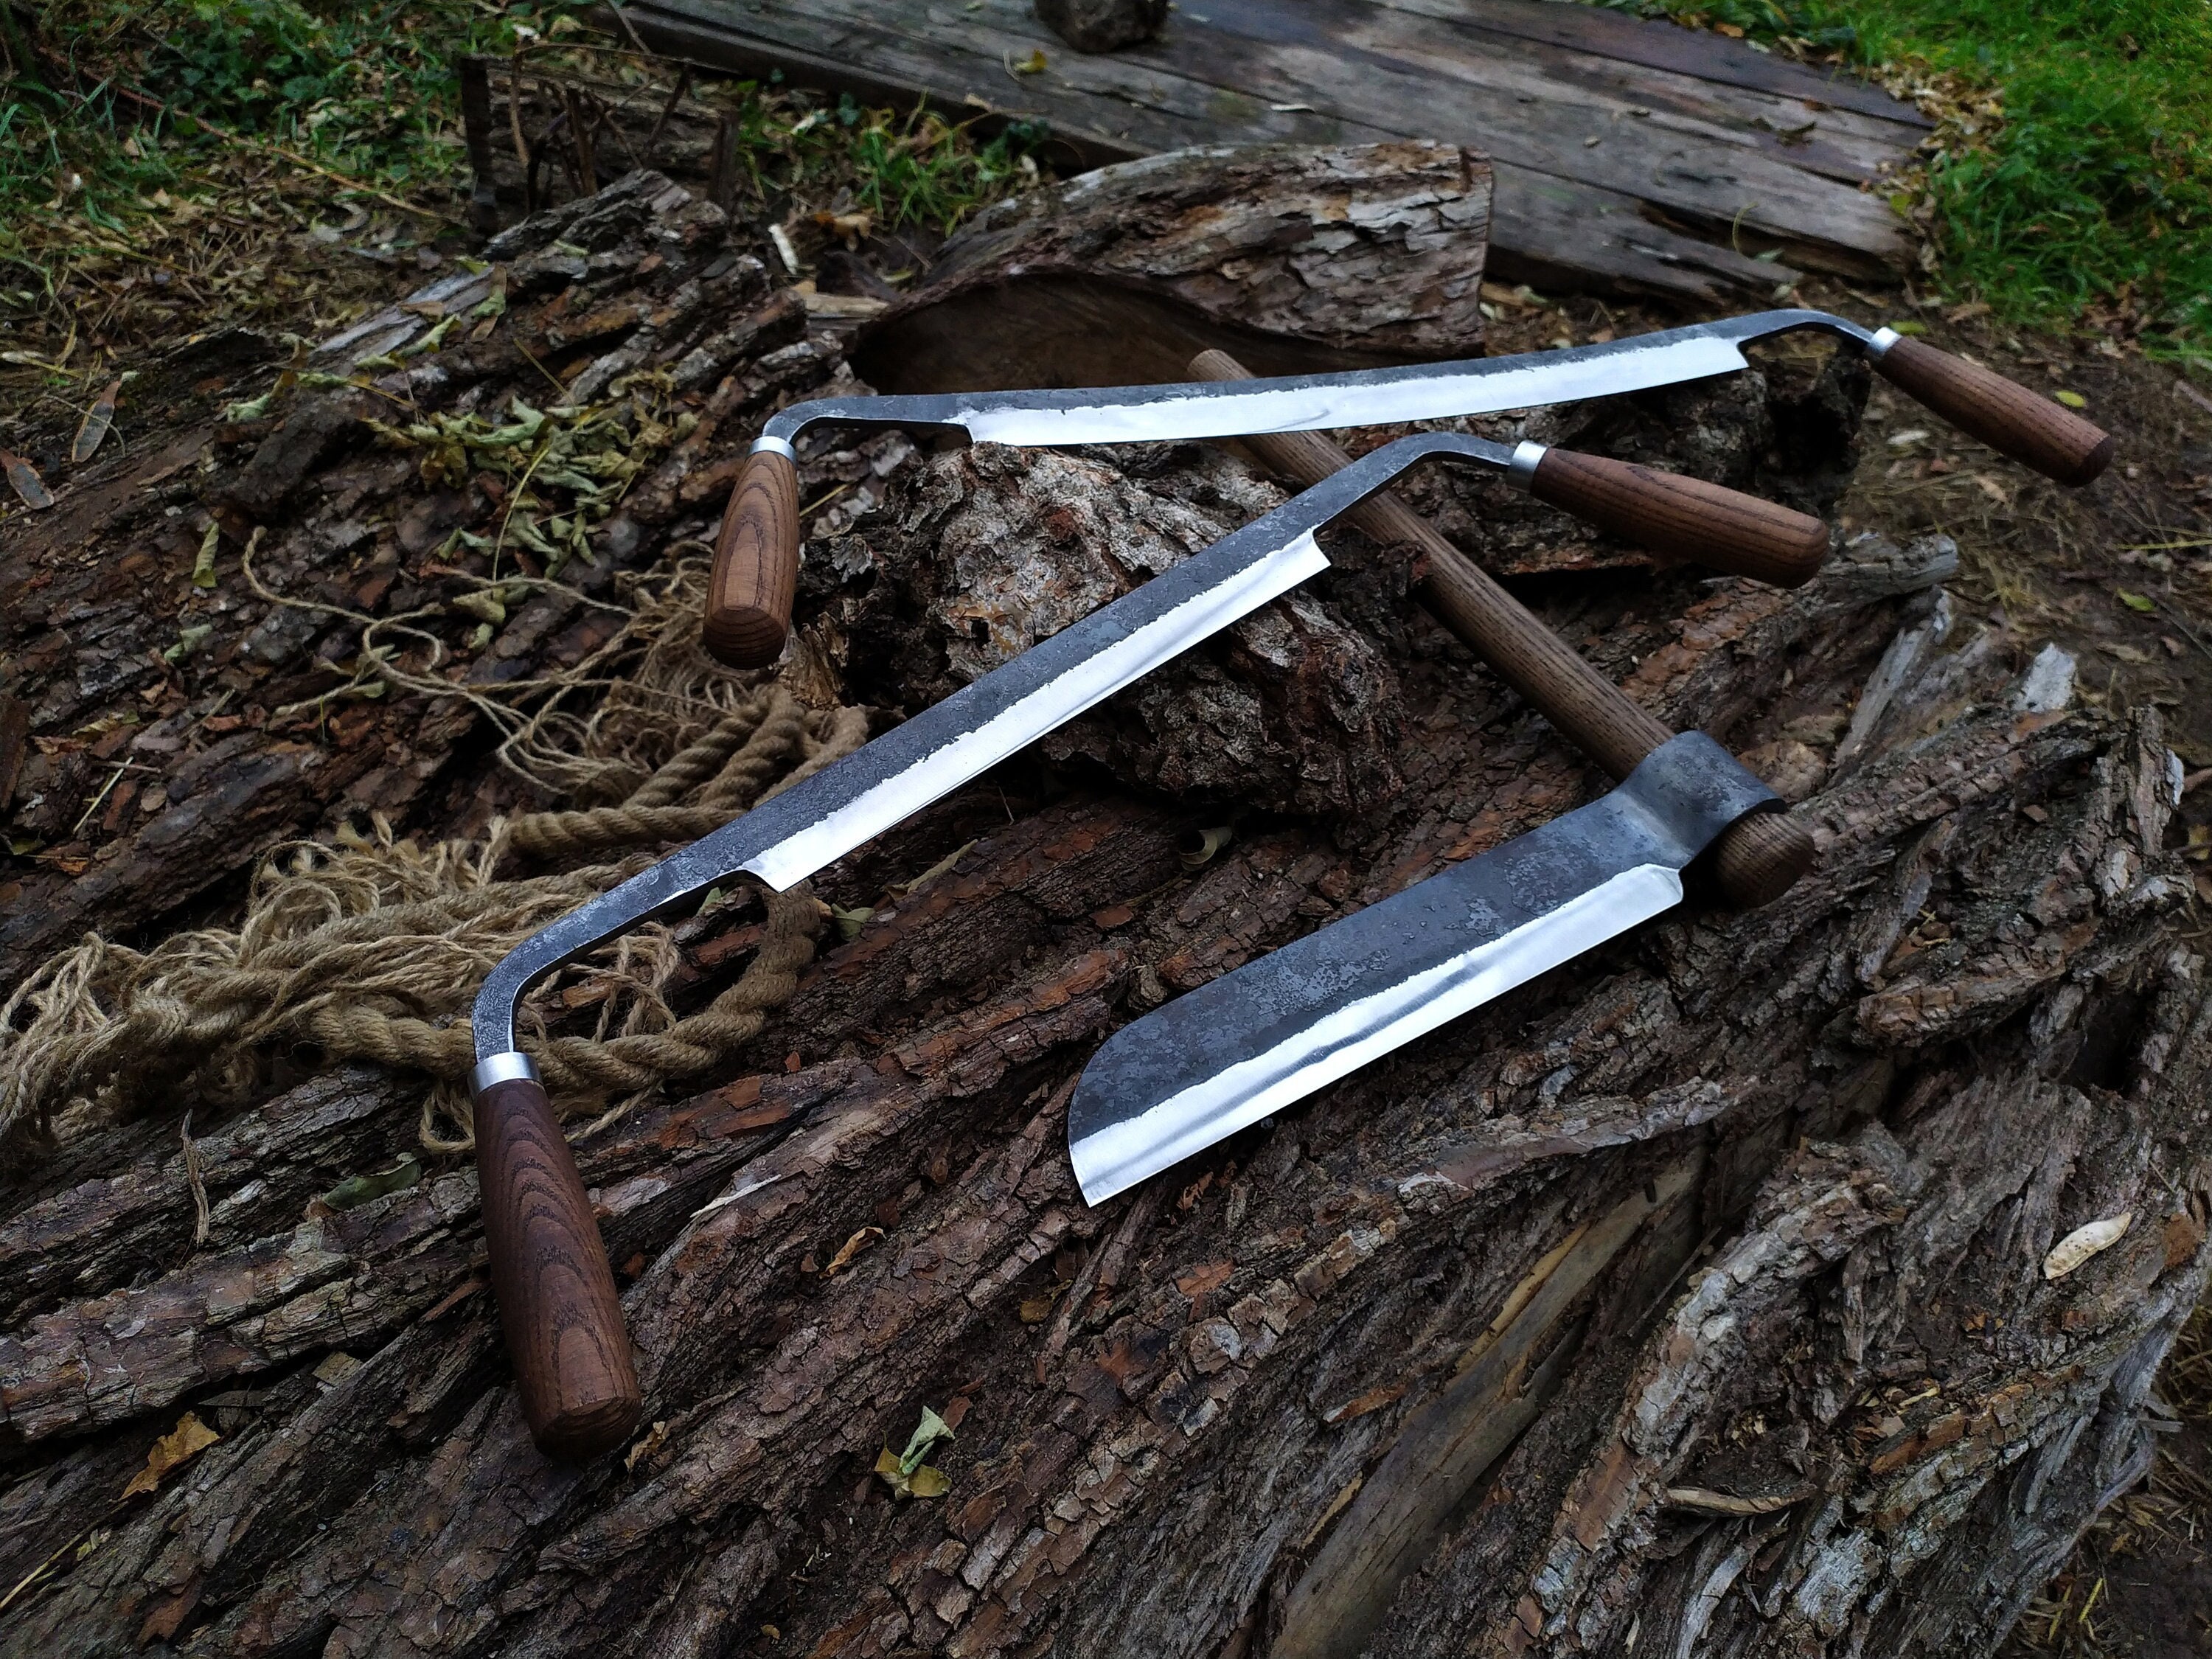 Flexcut - 5 Curved Blade Draw Knife with Sheath